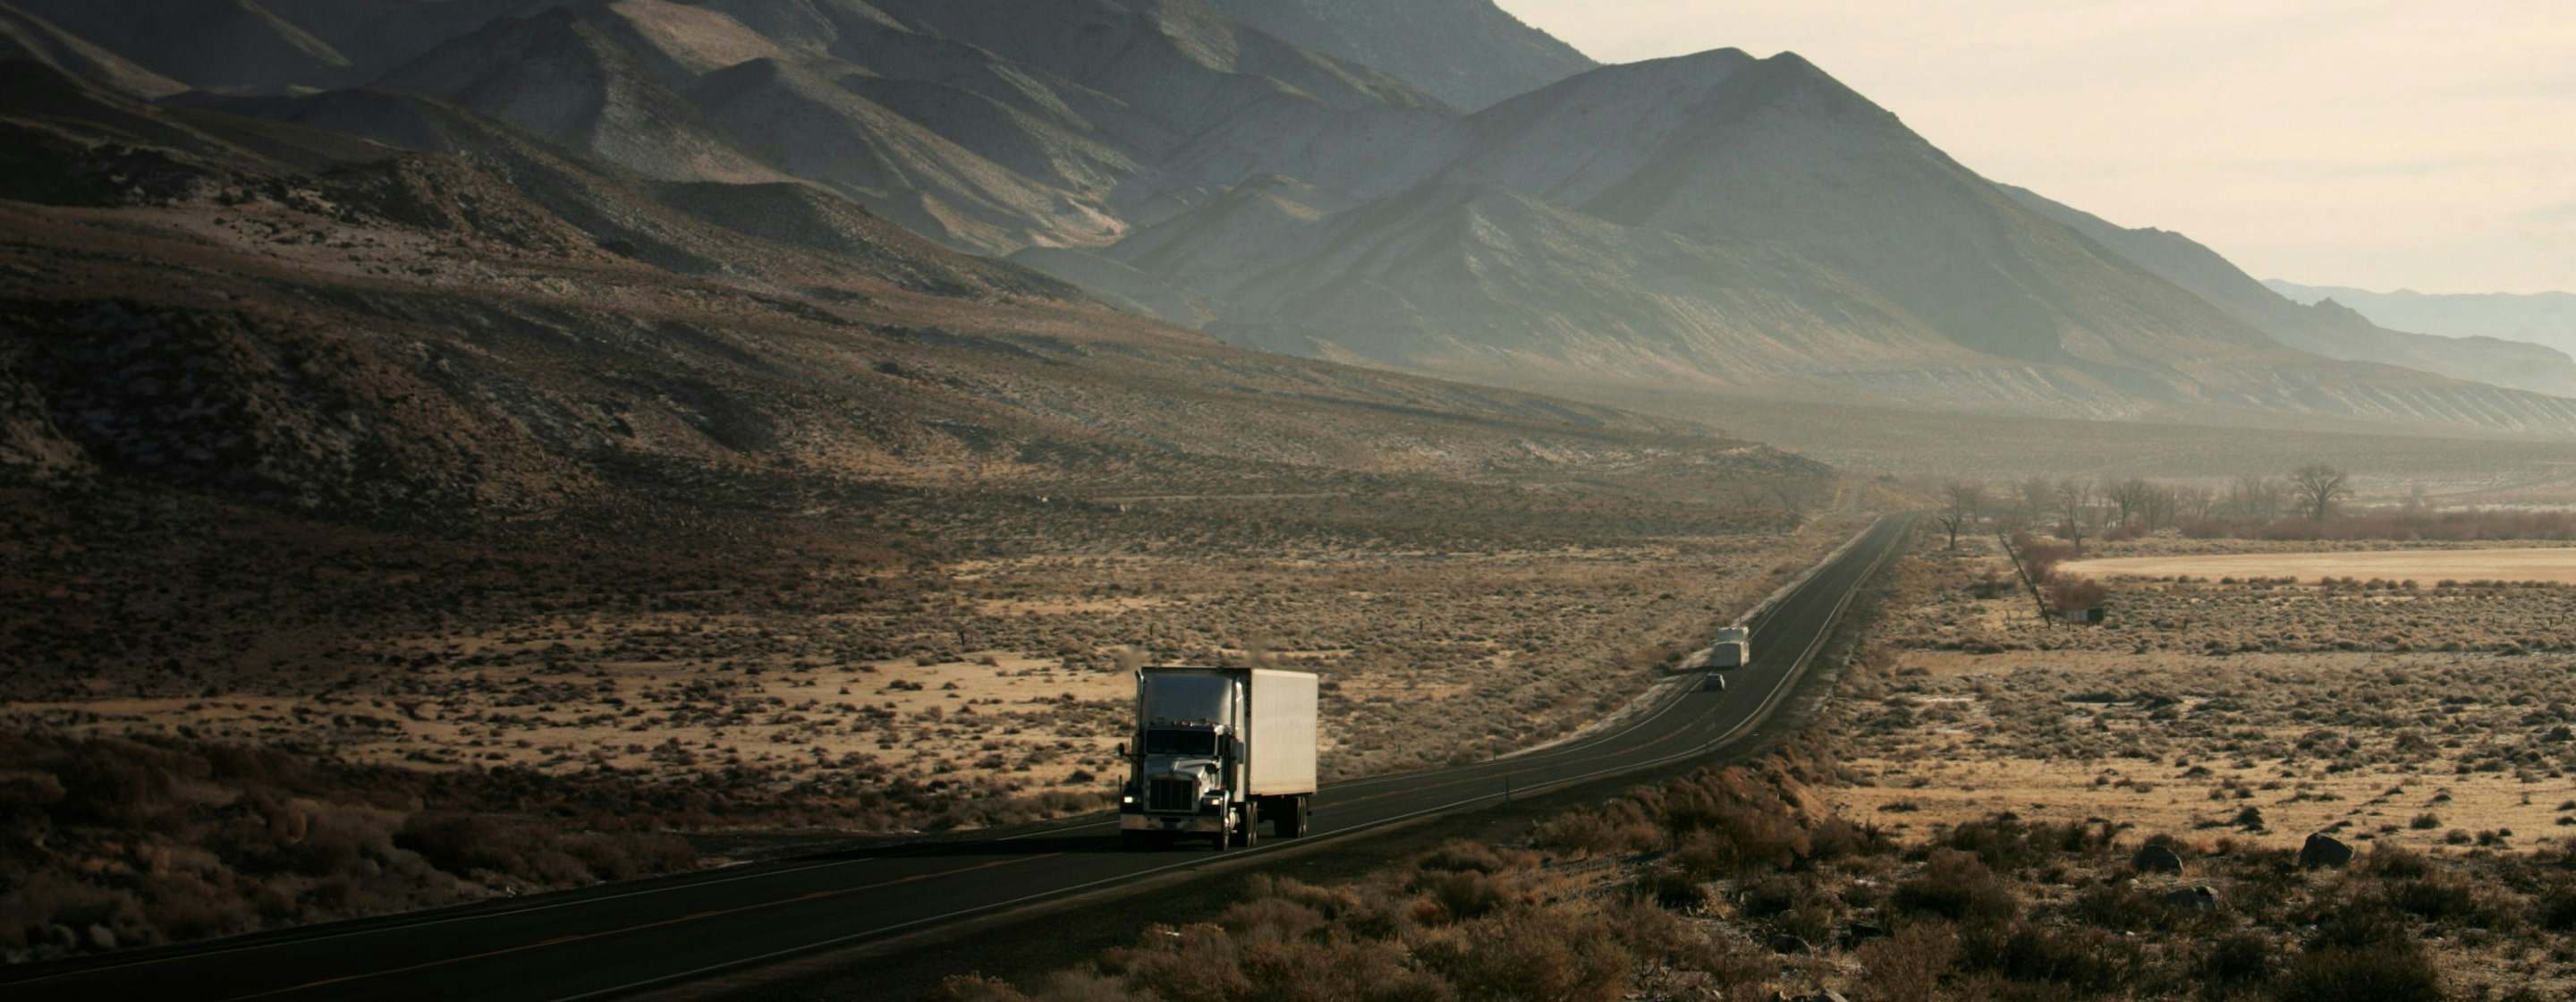 semi truck on desert highway